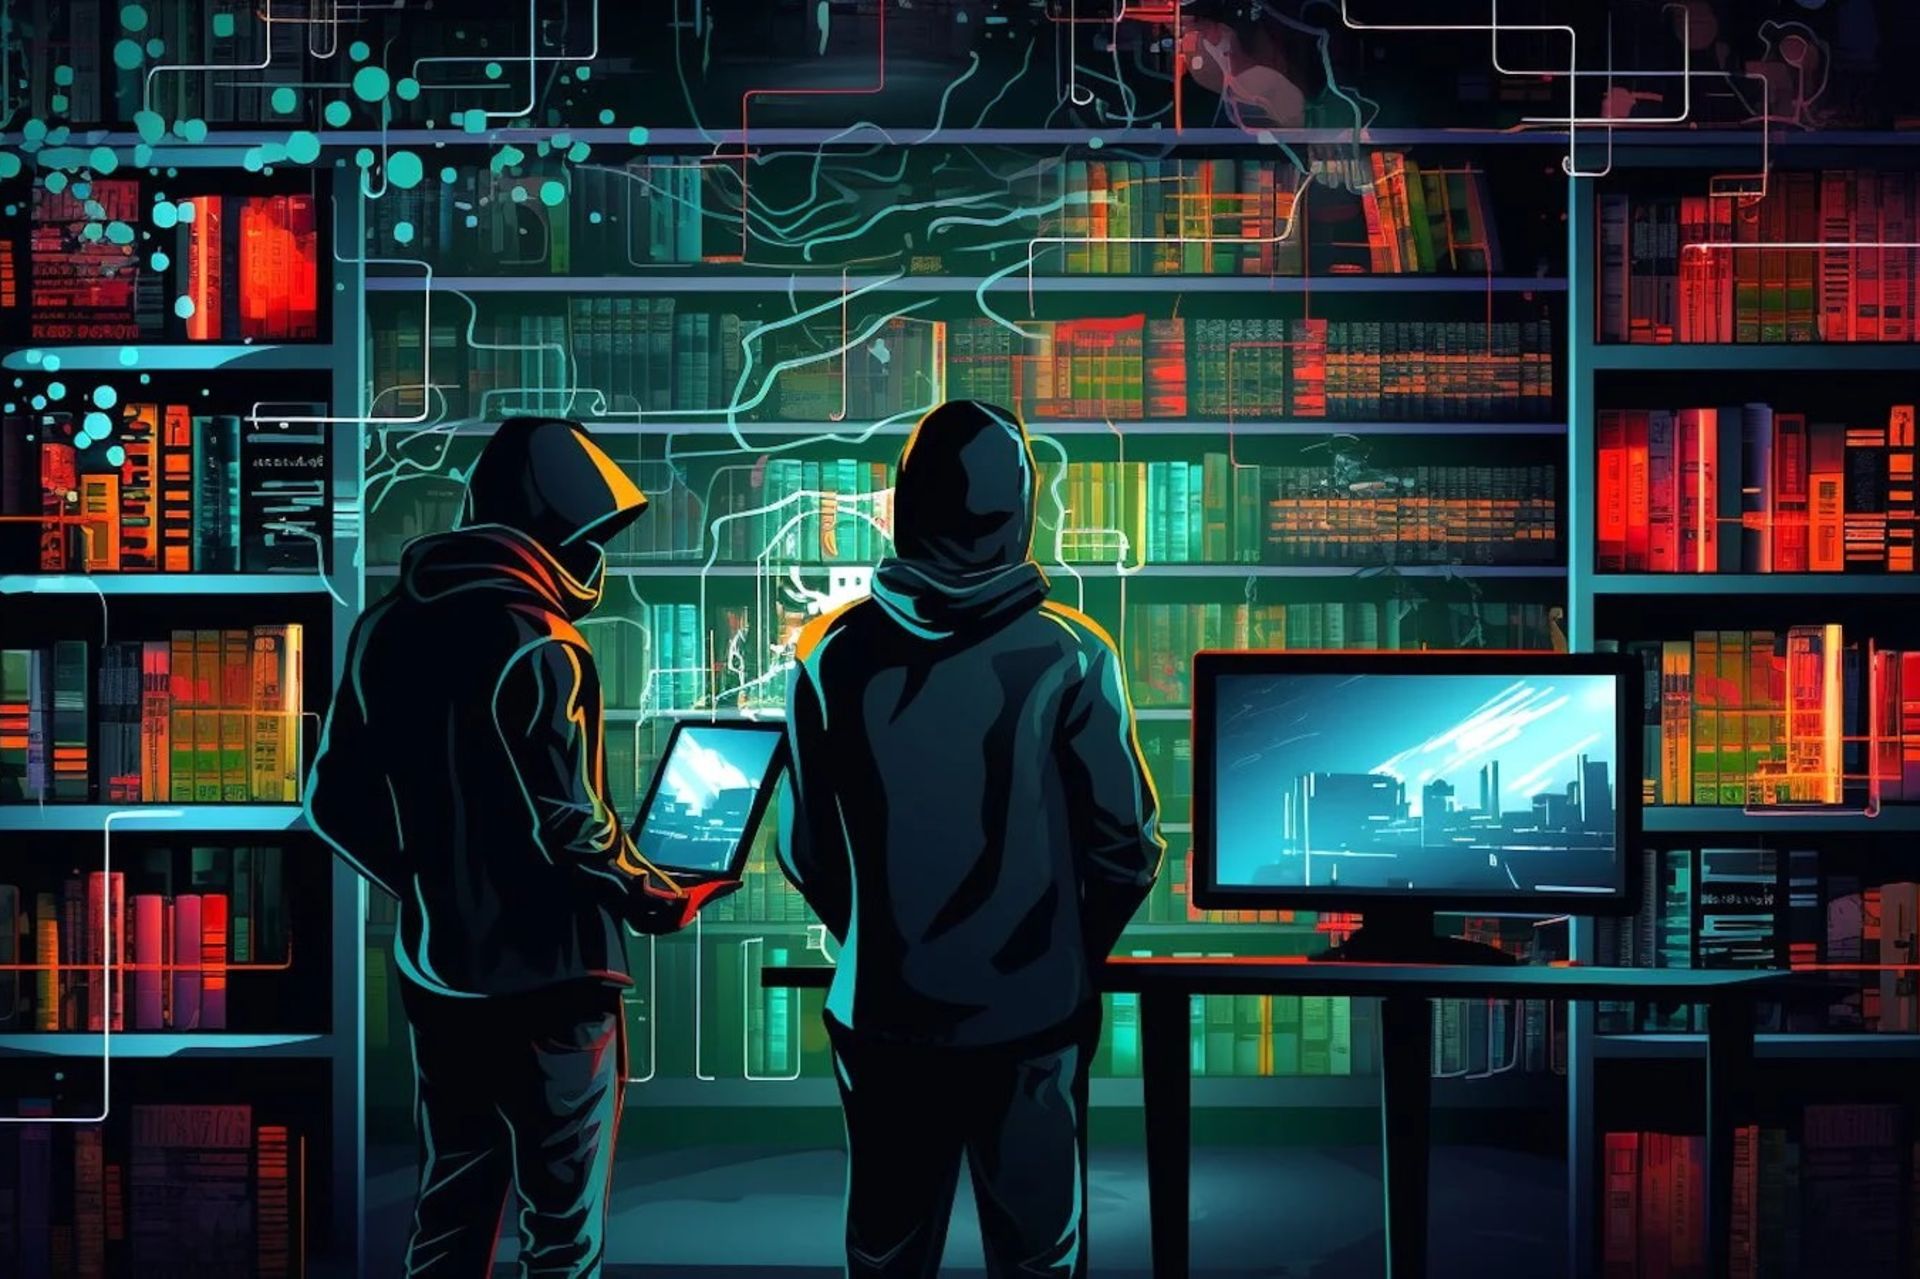 تصویر دو هکر در یک کتابخانه